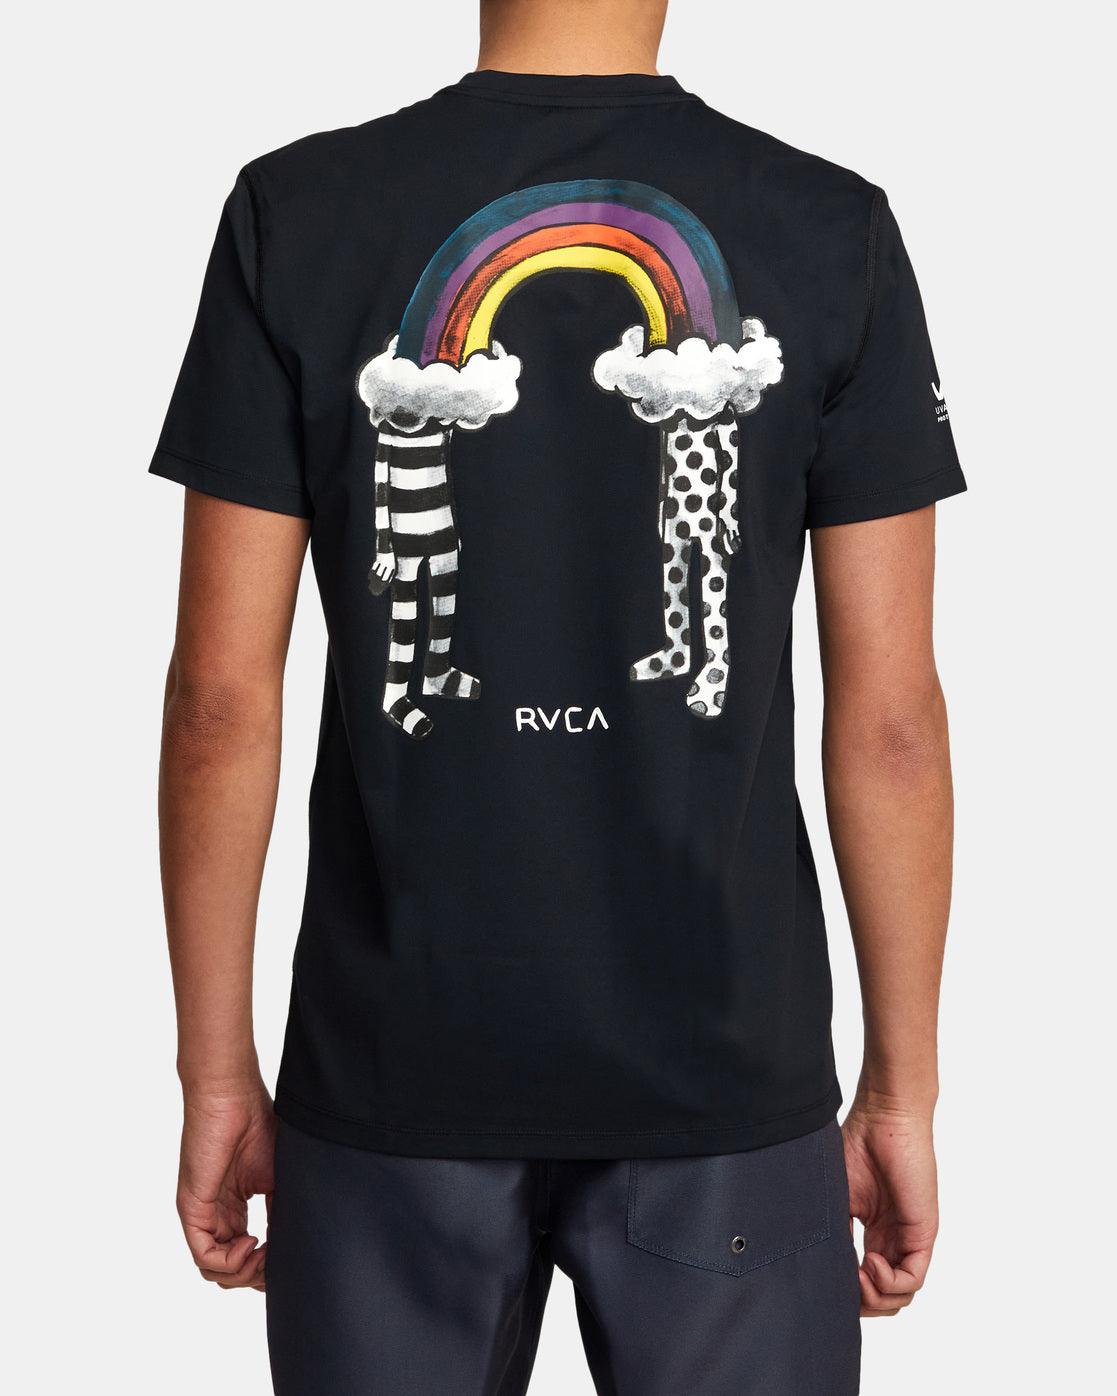 RVCA Surf Shirt Print - SoHa Surf Shop